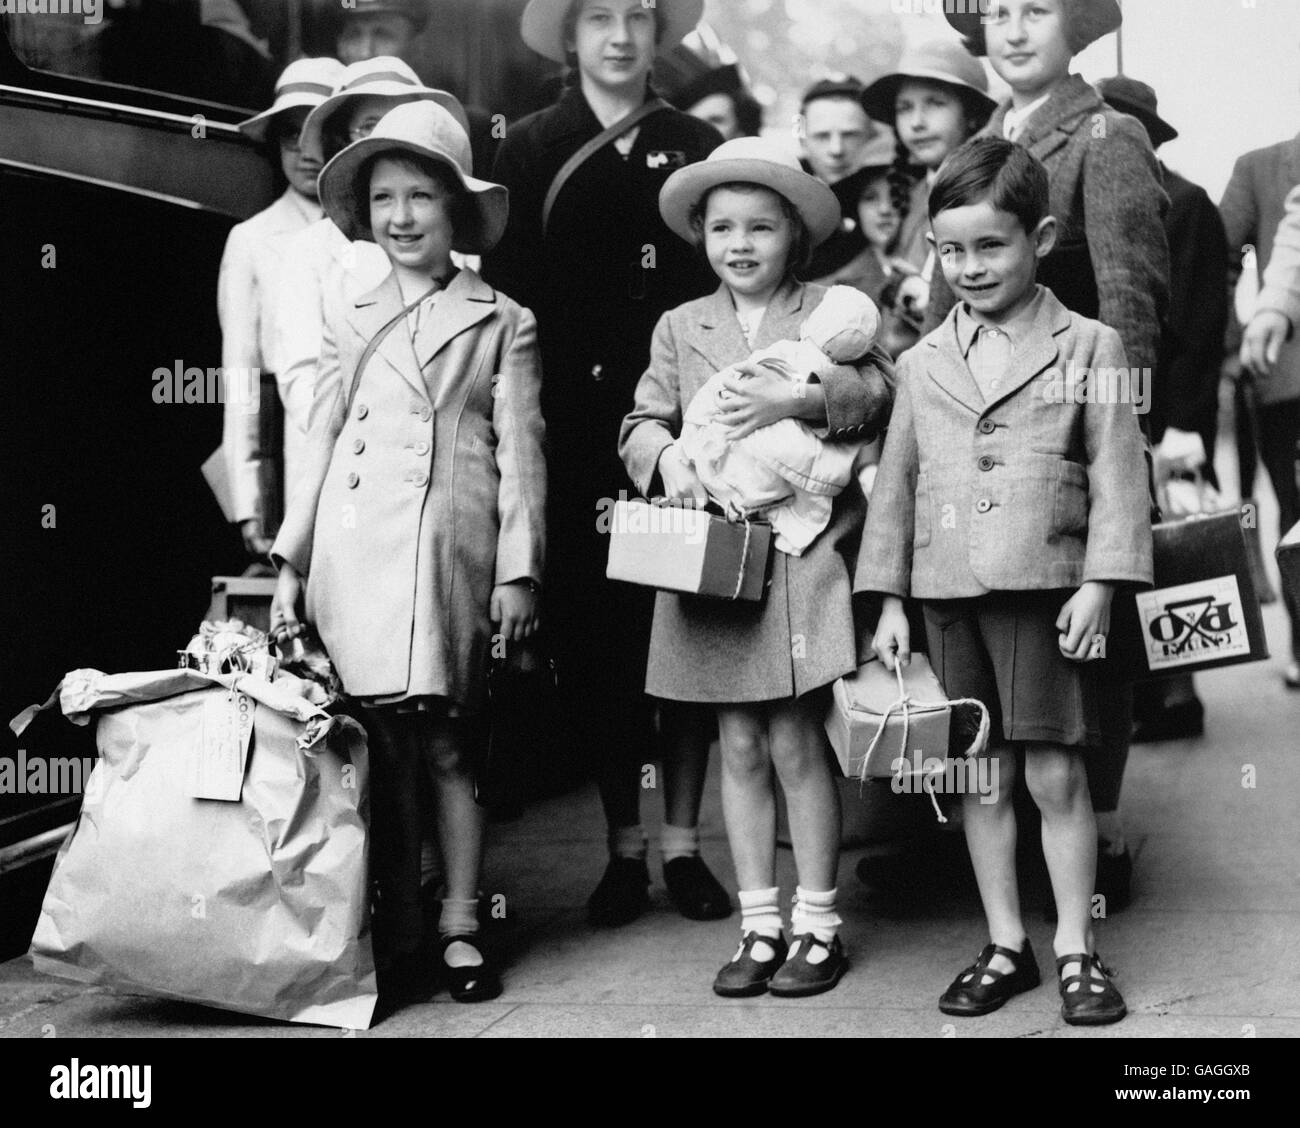 Londres évacua avec des masques à gaz (en carton) et des bagages tous mis pour l'évacuation de la capitale vers les autres régions du pays, pendant la Seconde Guerre mondiale. Banque D'Images